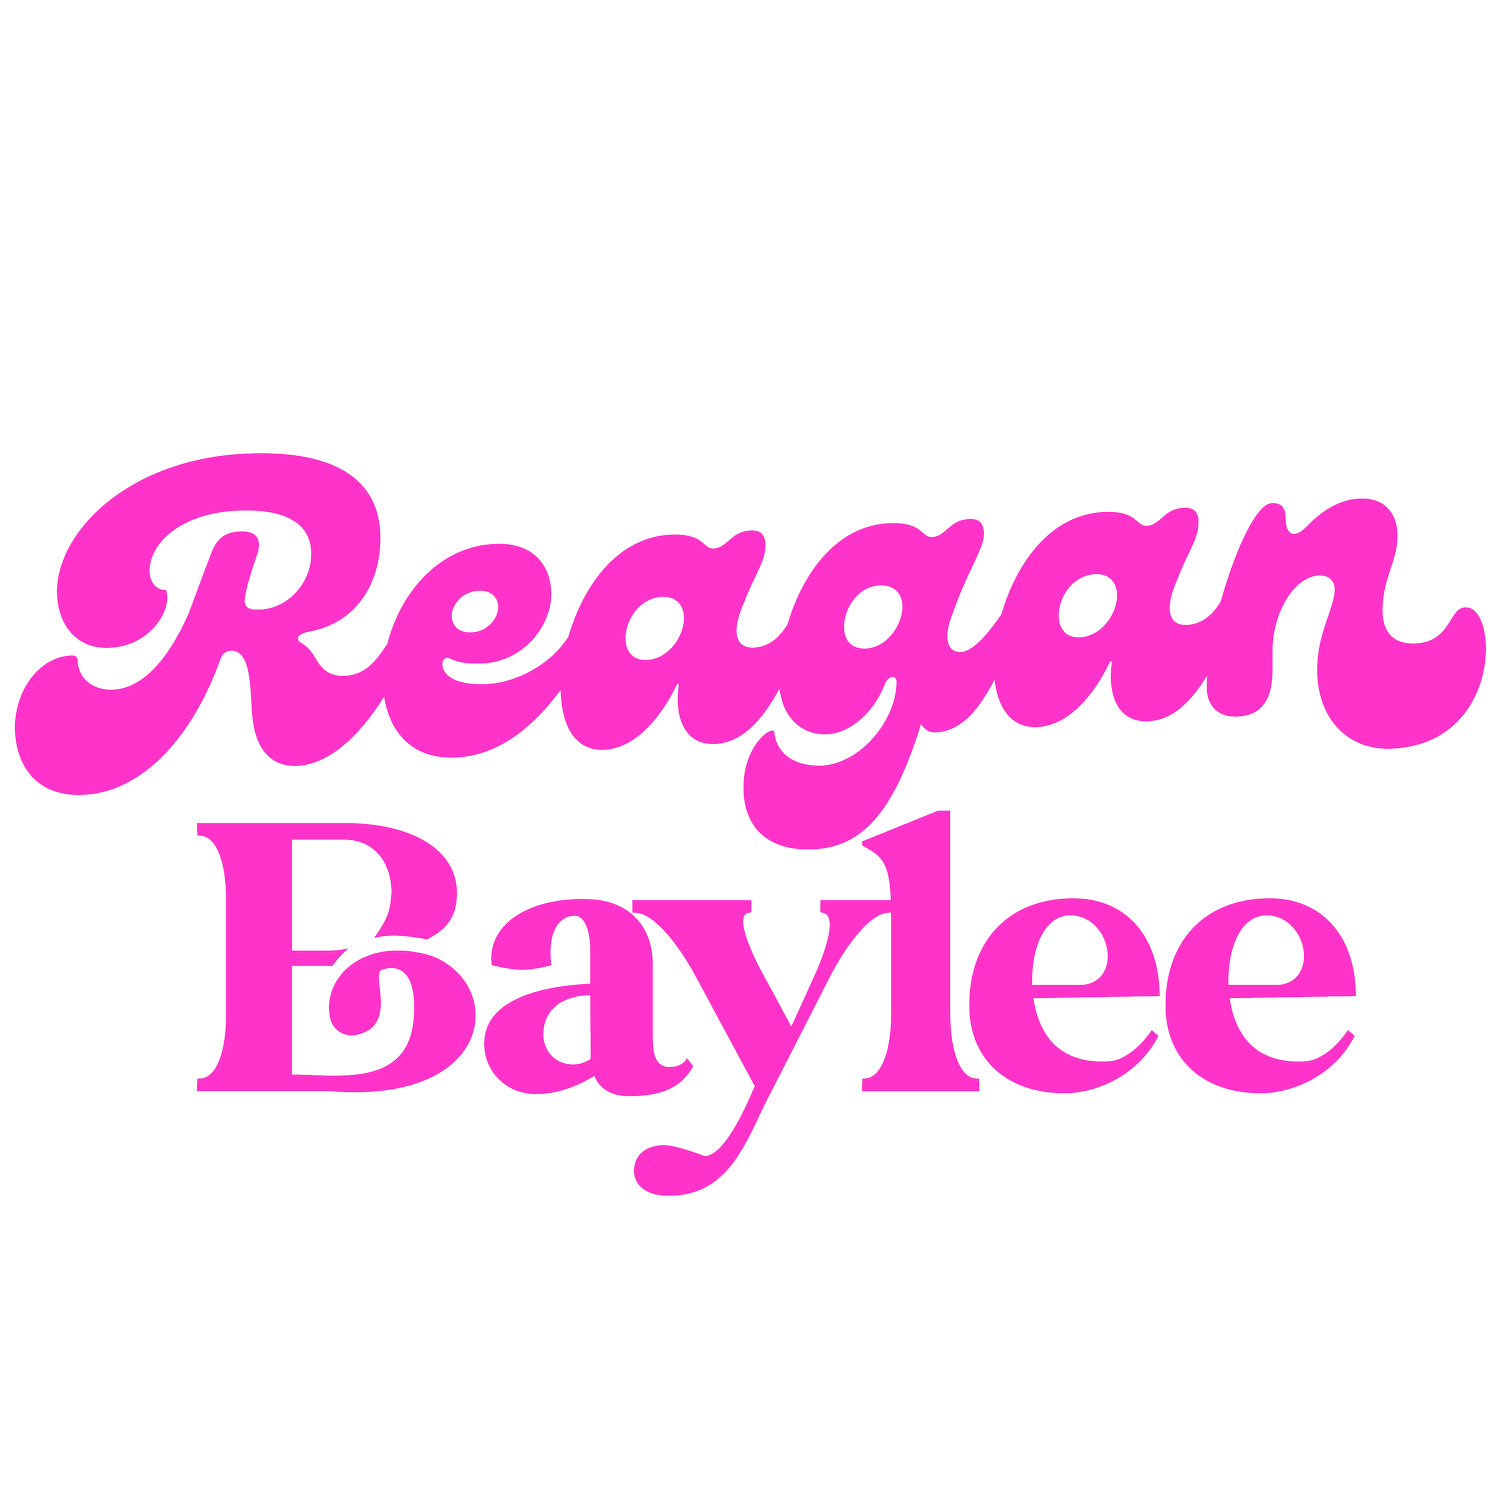 Reagan Baylee